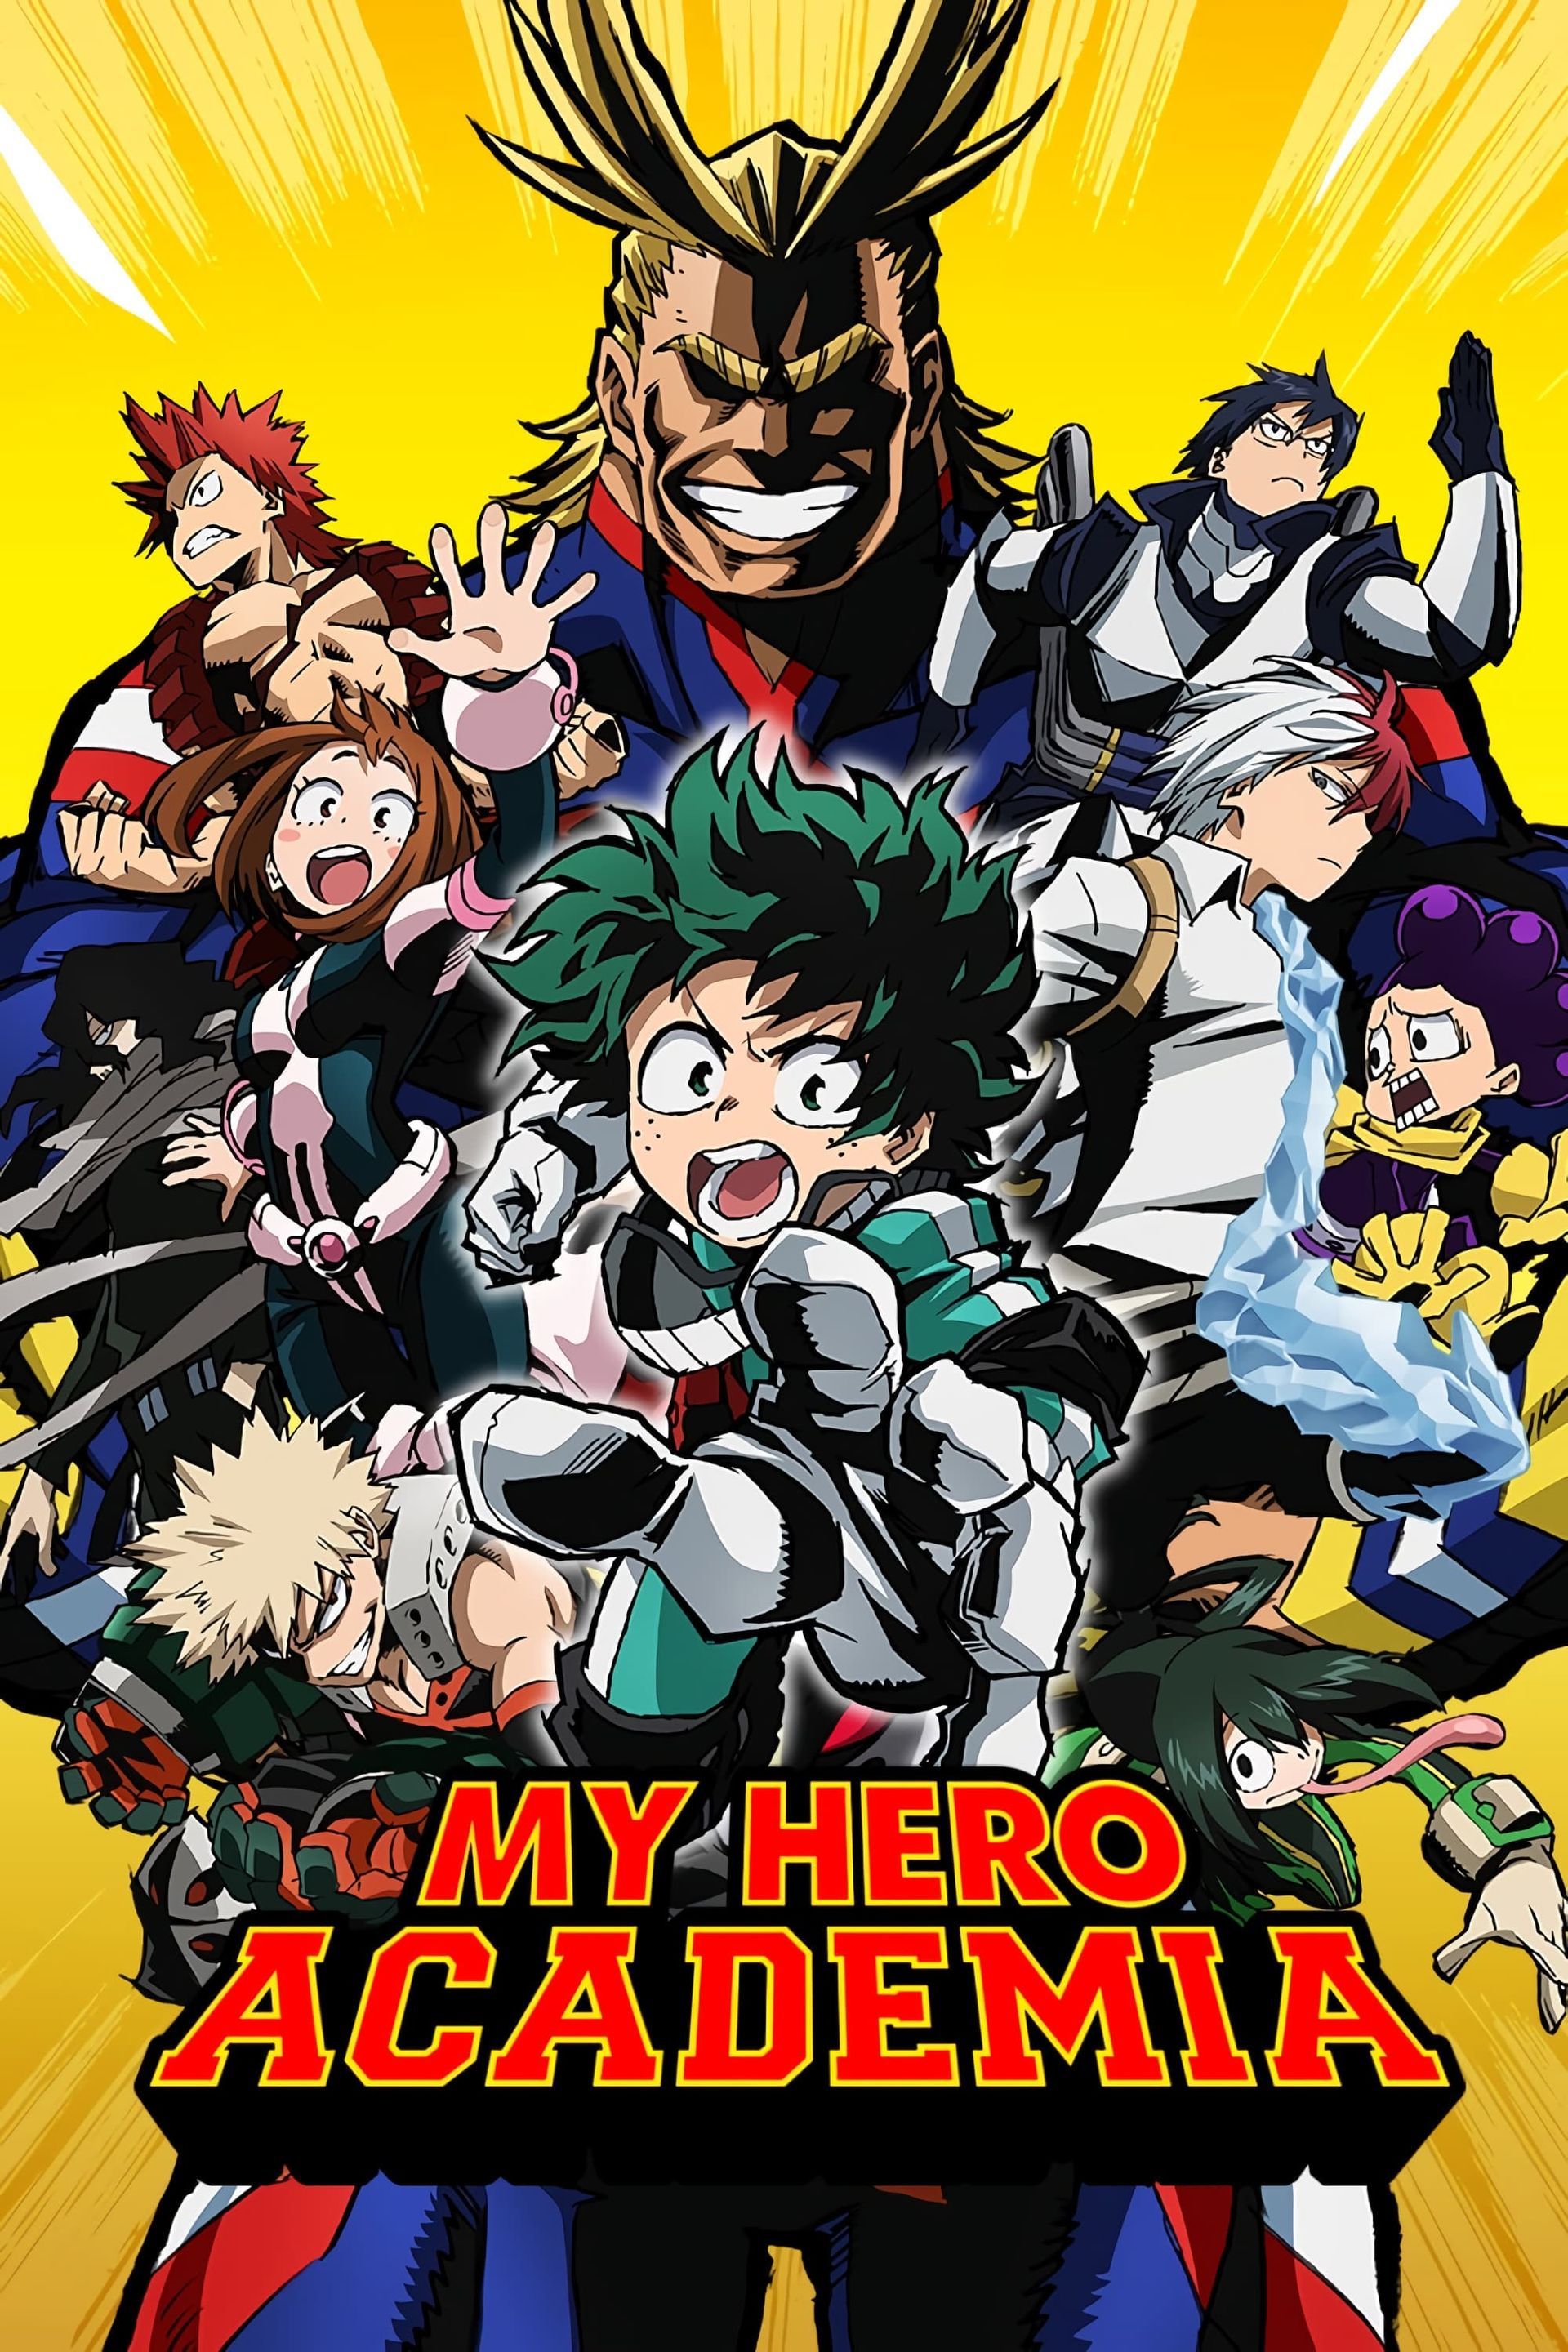 Where to Watch My Hero Academia World Heroes' Mission? - OtakuKart